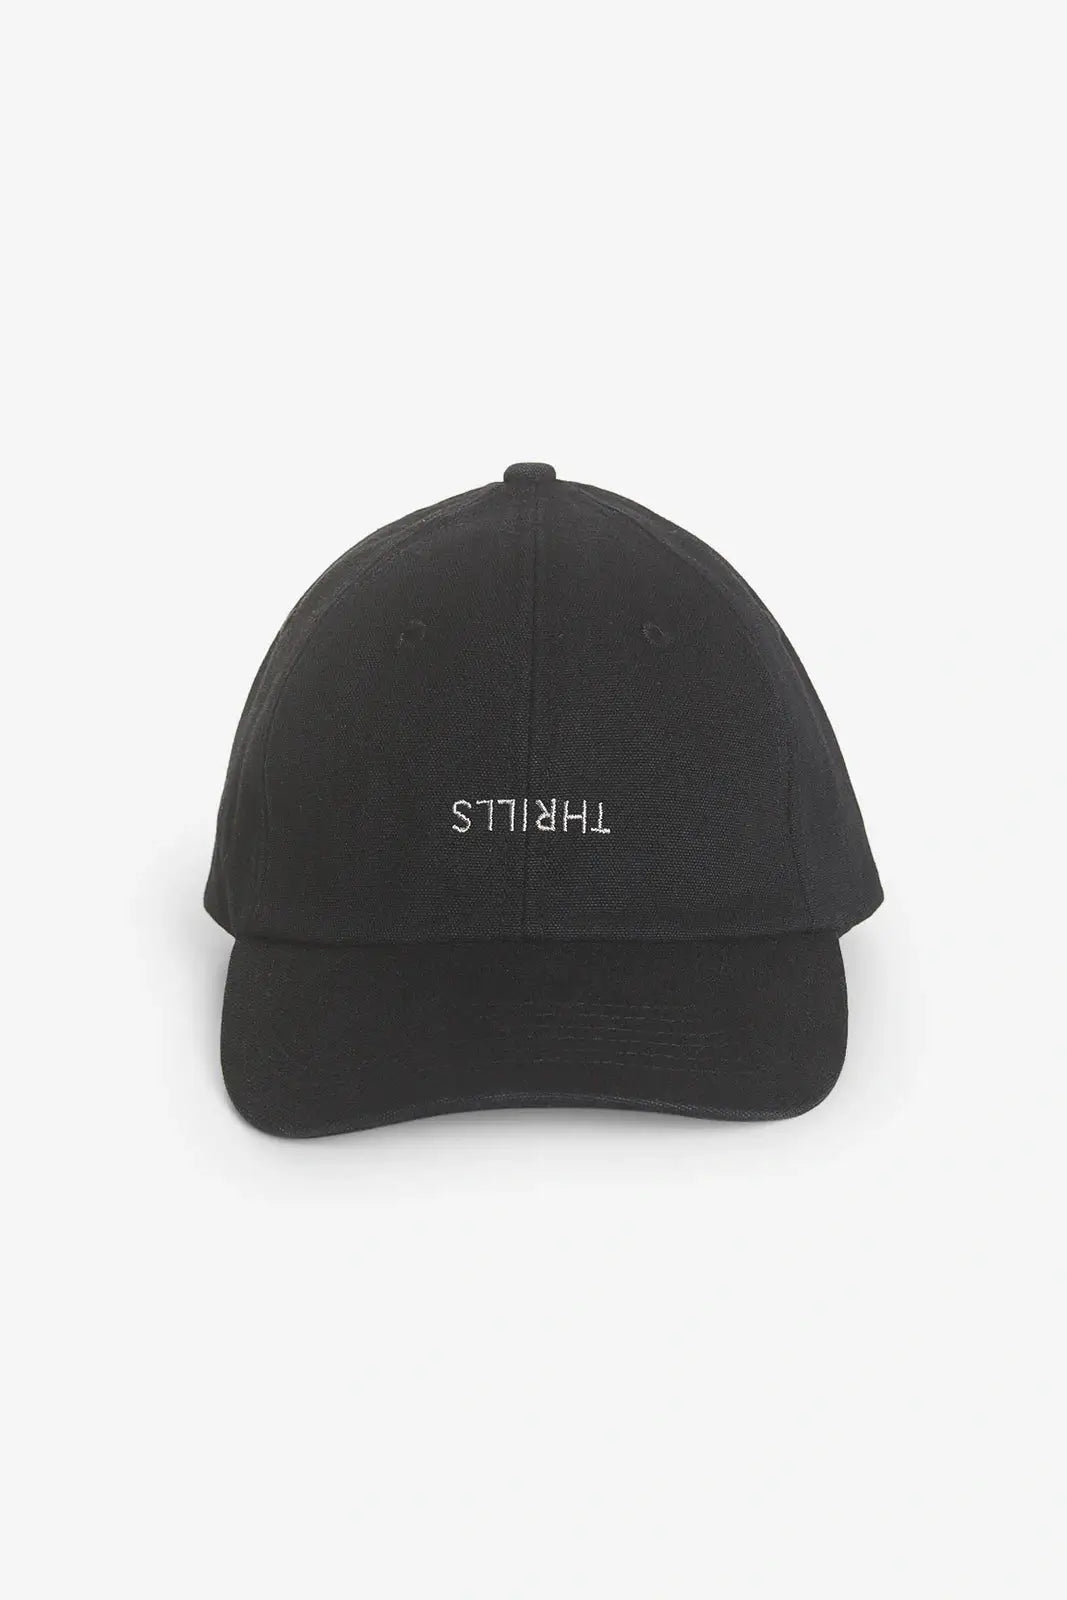 THRILLS Minimal cap - Black